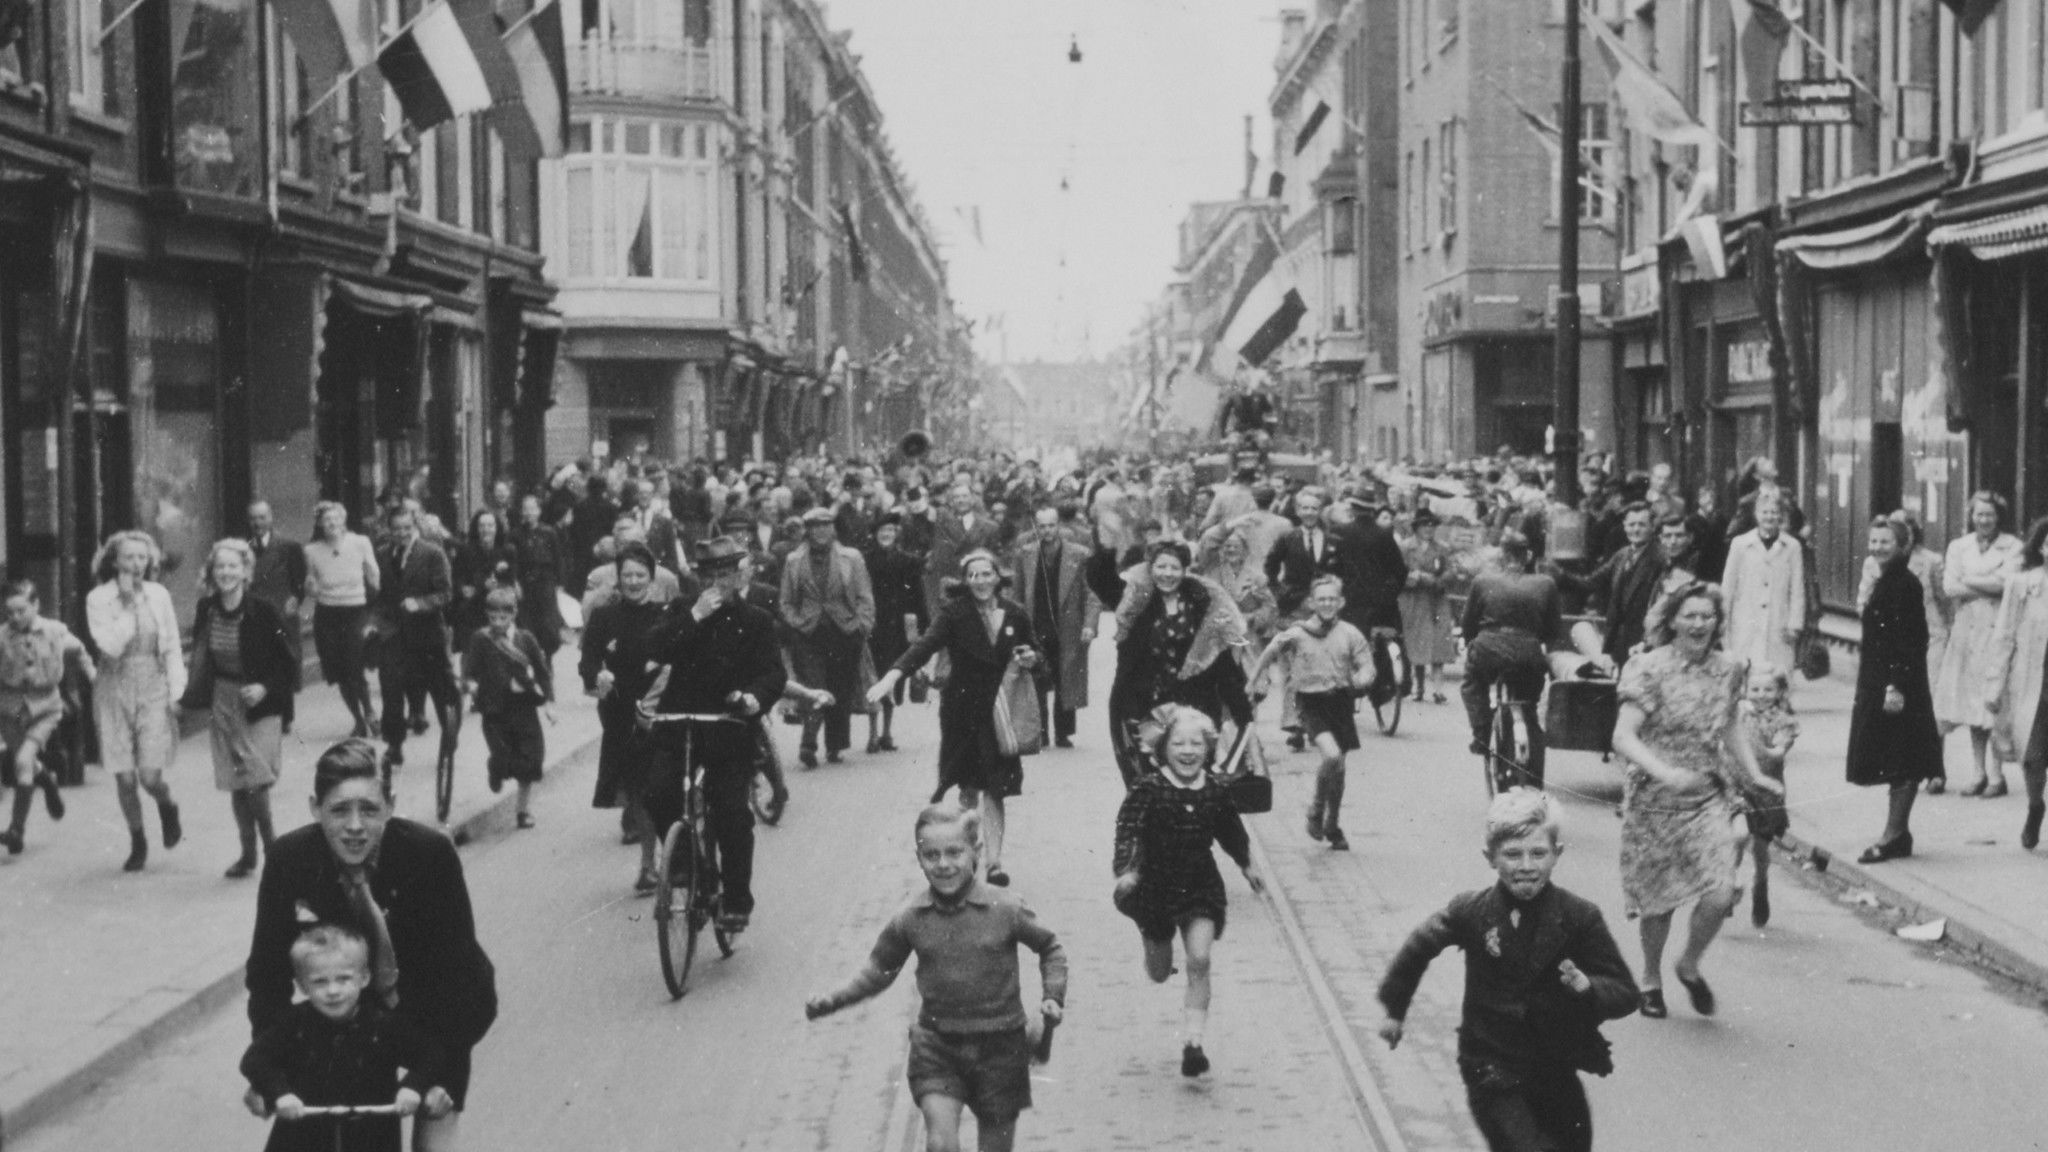 Witte de Withstraat The Hague, The Netherlands in 1945